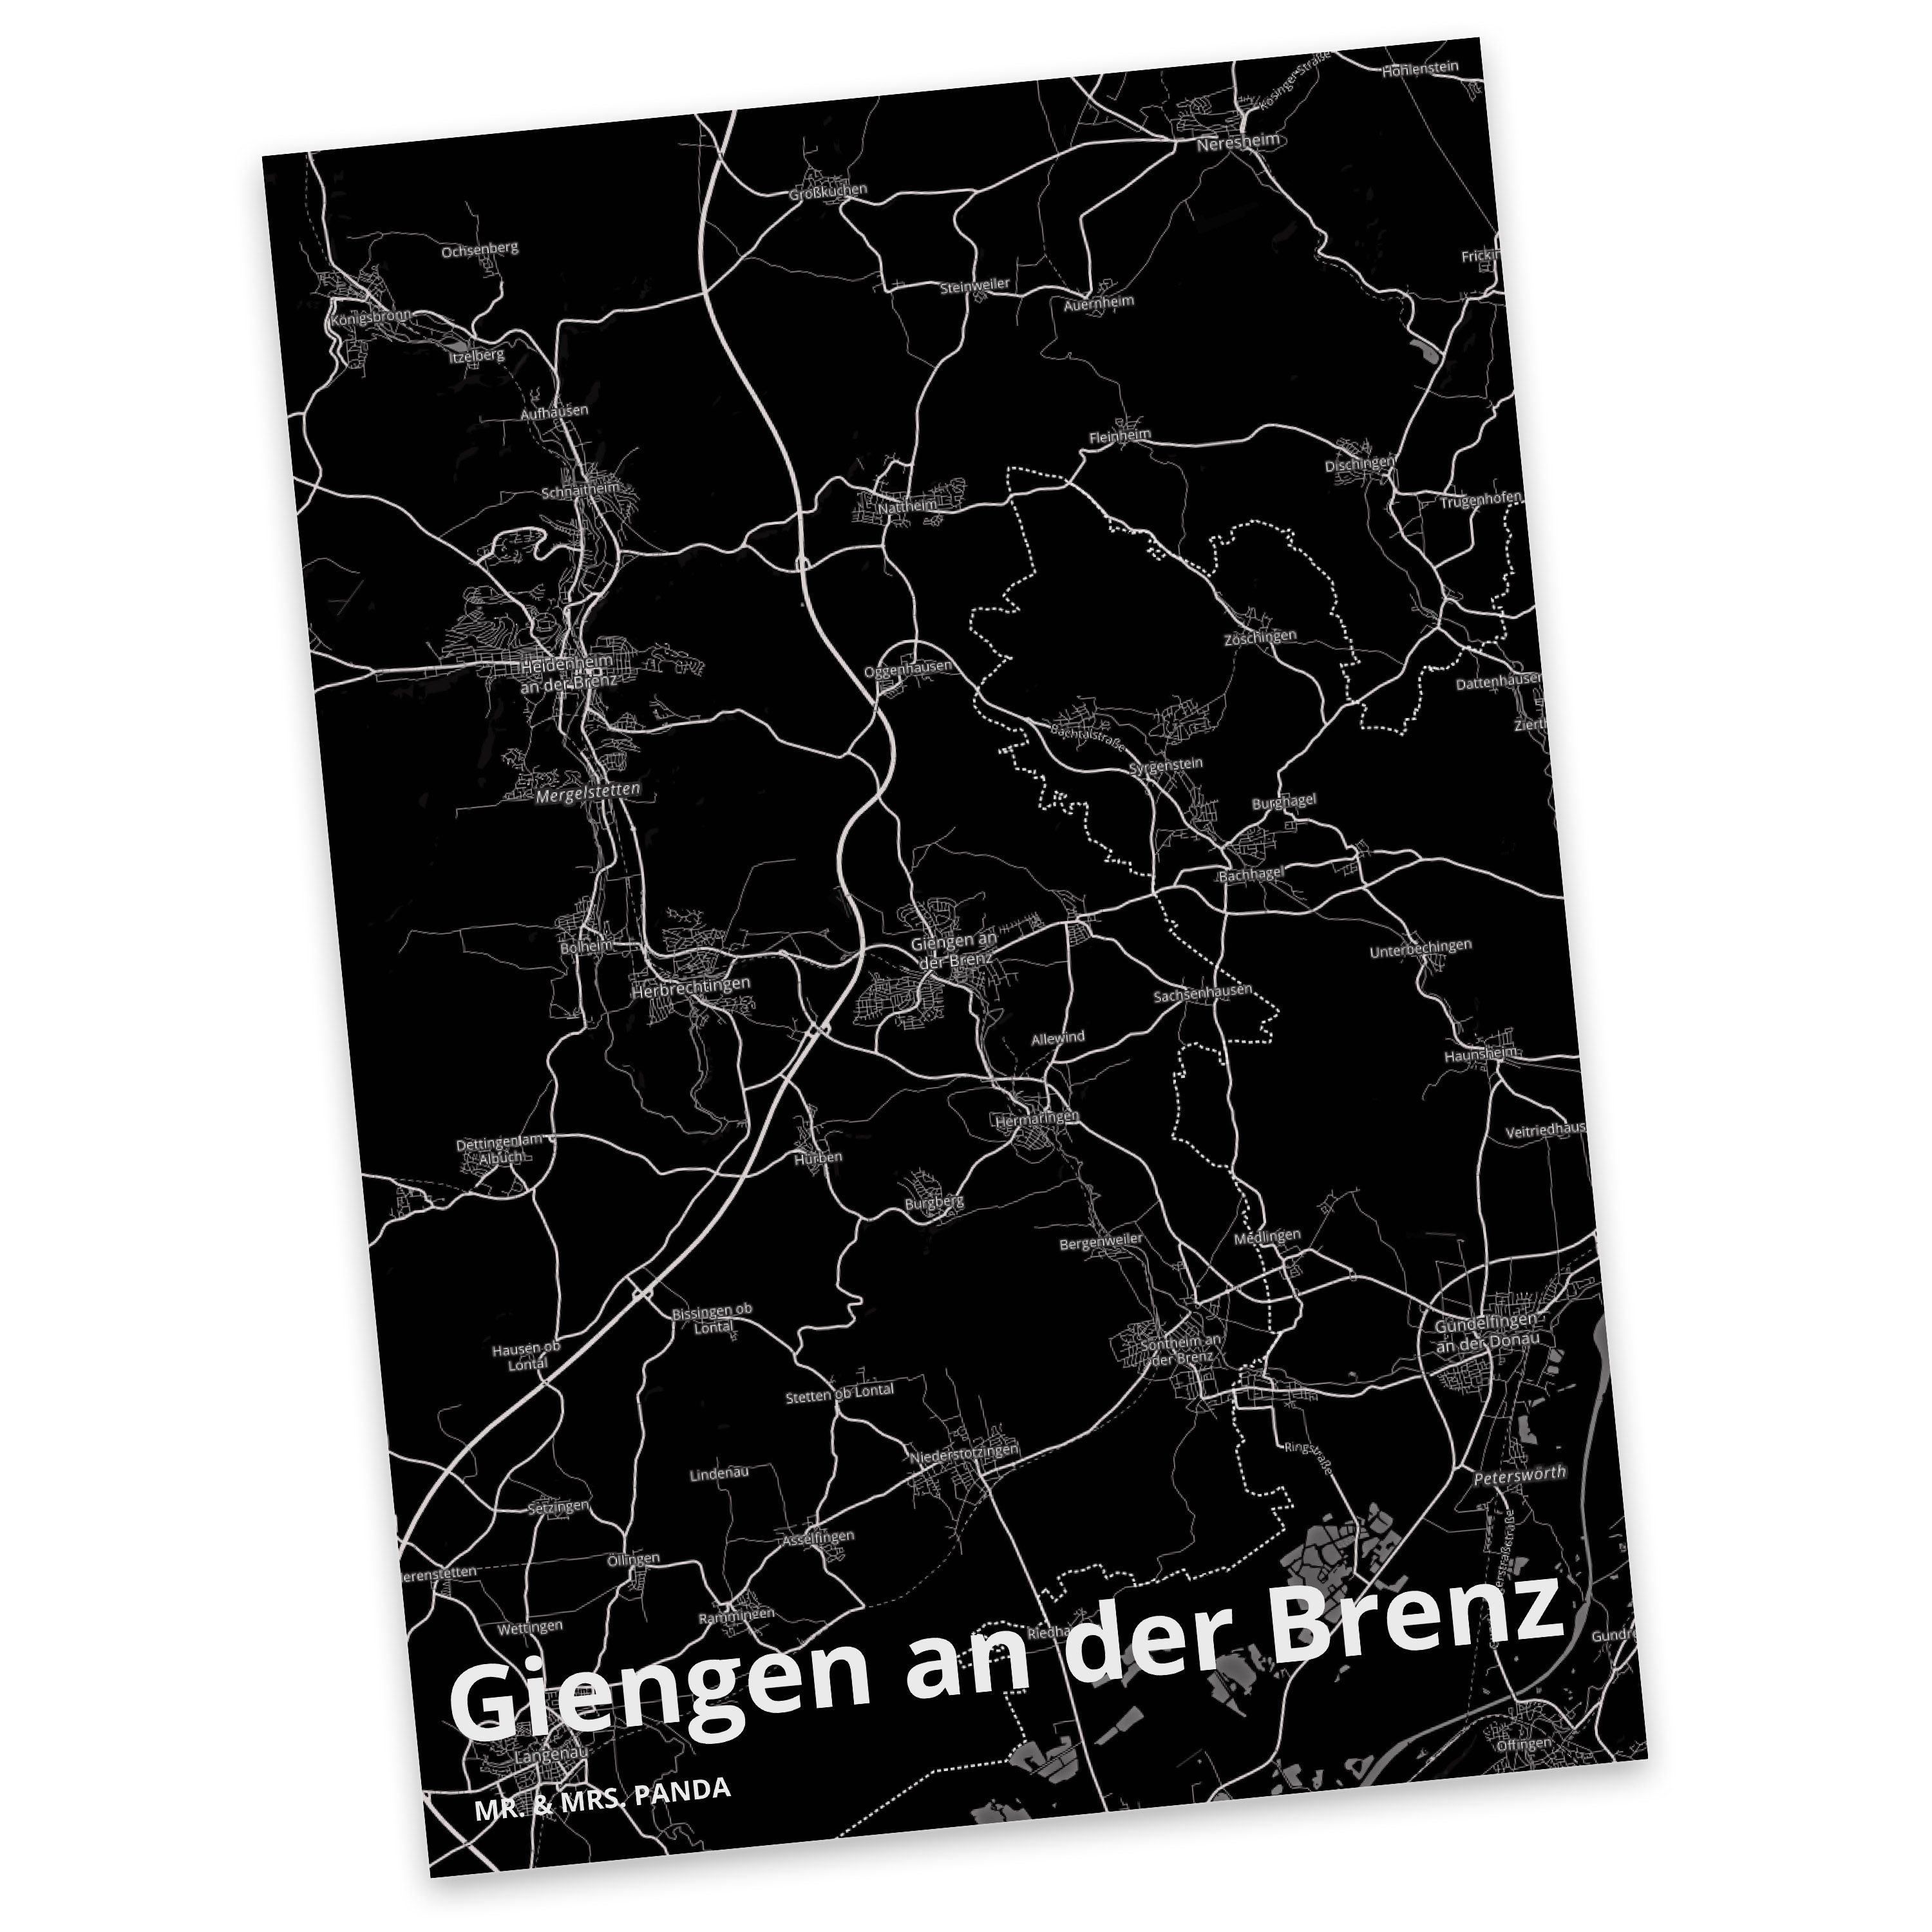 Mr. & Mrs. Panda Postkarte Giengen an der Brenz - Geschenk, Stadt Dorf Karte Landkarte Map Stadt